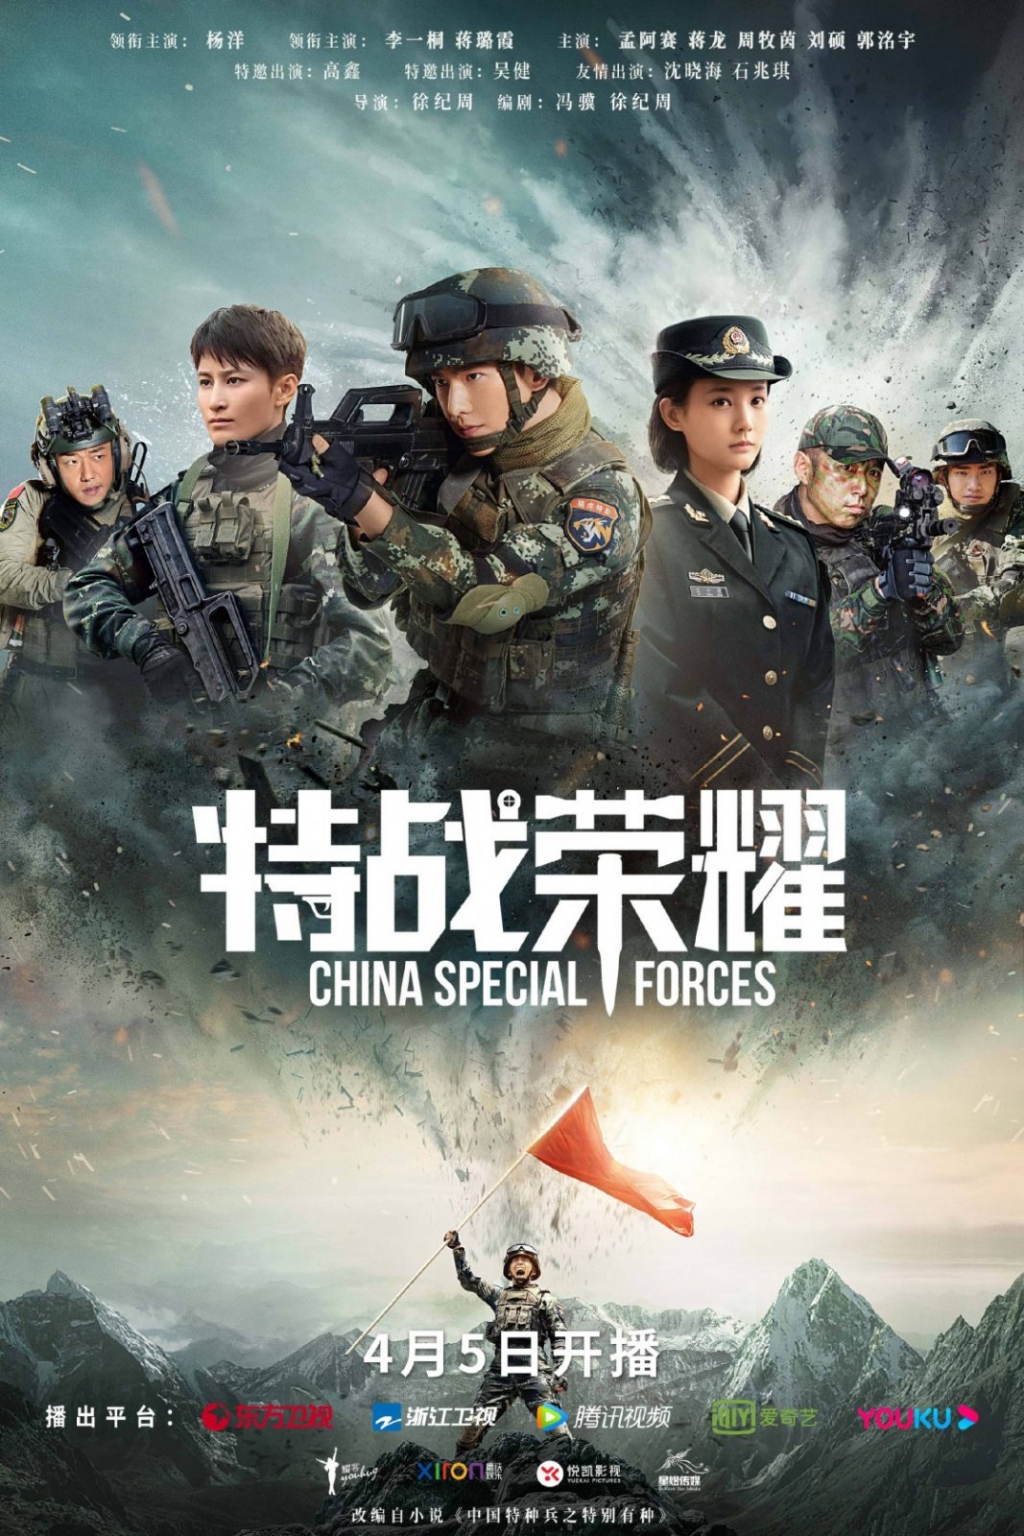 12 bộ phim Hoa ngữ hot nhất khiến bạn không thể bỏ lỡ trong tháng 4: 'Ngự Giao Ký 2', 'Đặc Chiến Vinh Diệu'...